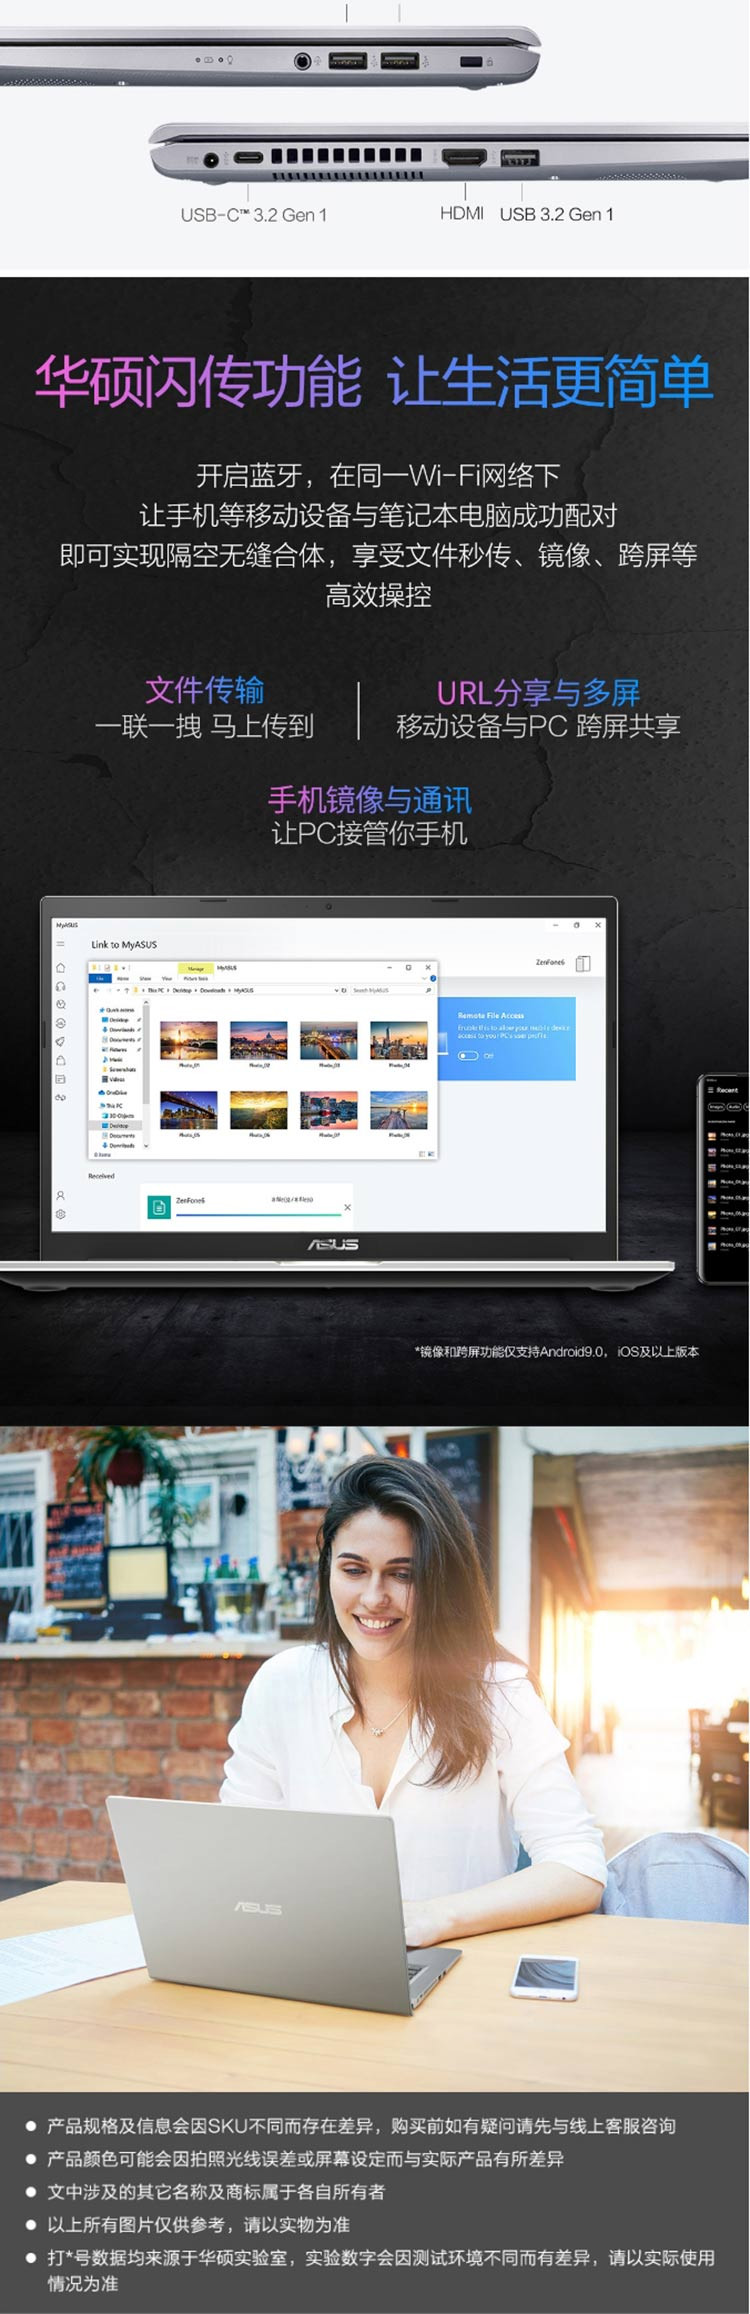 华硕Vivobook15 15.6英寸高清大屏轻薄笔记本电脑 i3-1115G4 8G 512G